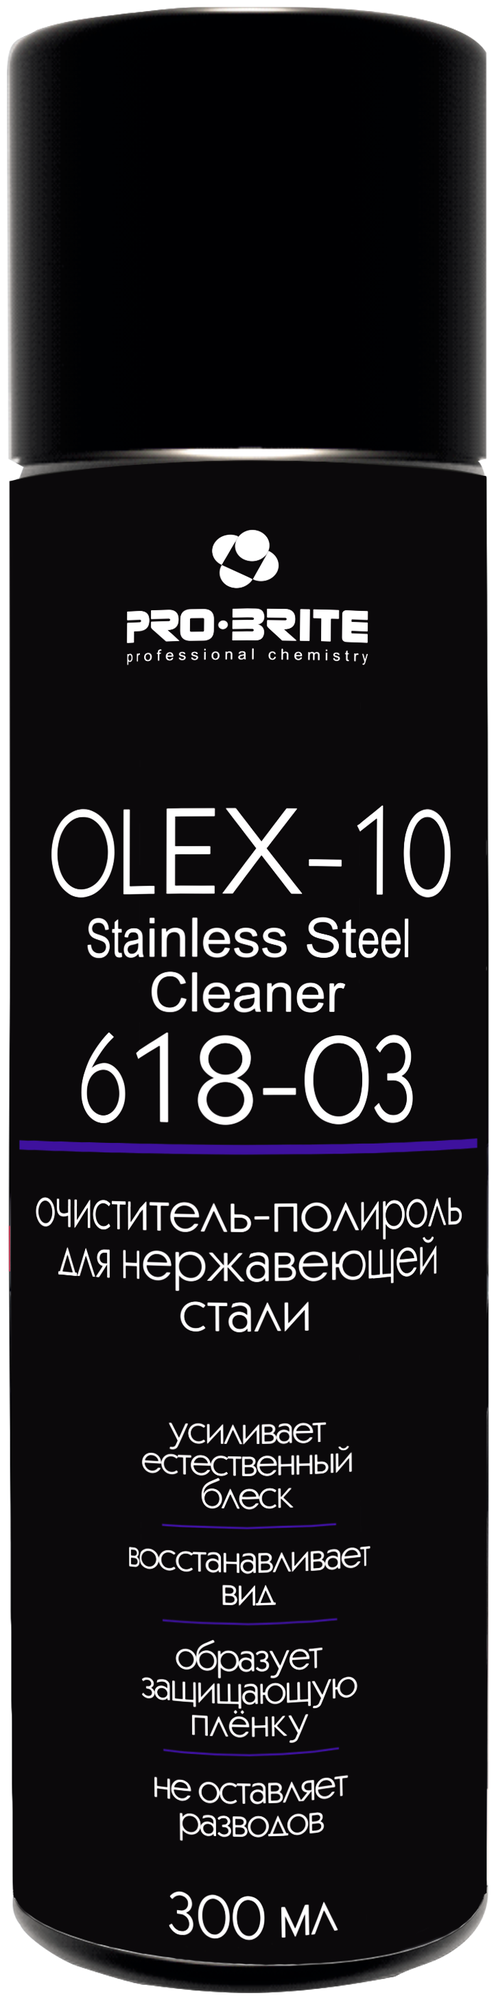 Pro-Brite Очиститель-полироль для нержавеющей стали OLEX-10. Stainless Steel Cleaner (аэрозоль) 300 мл